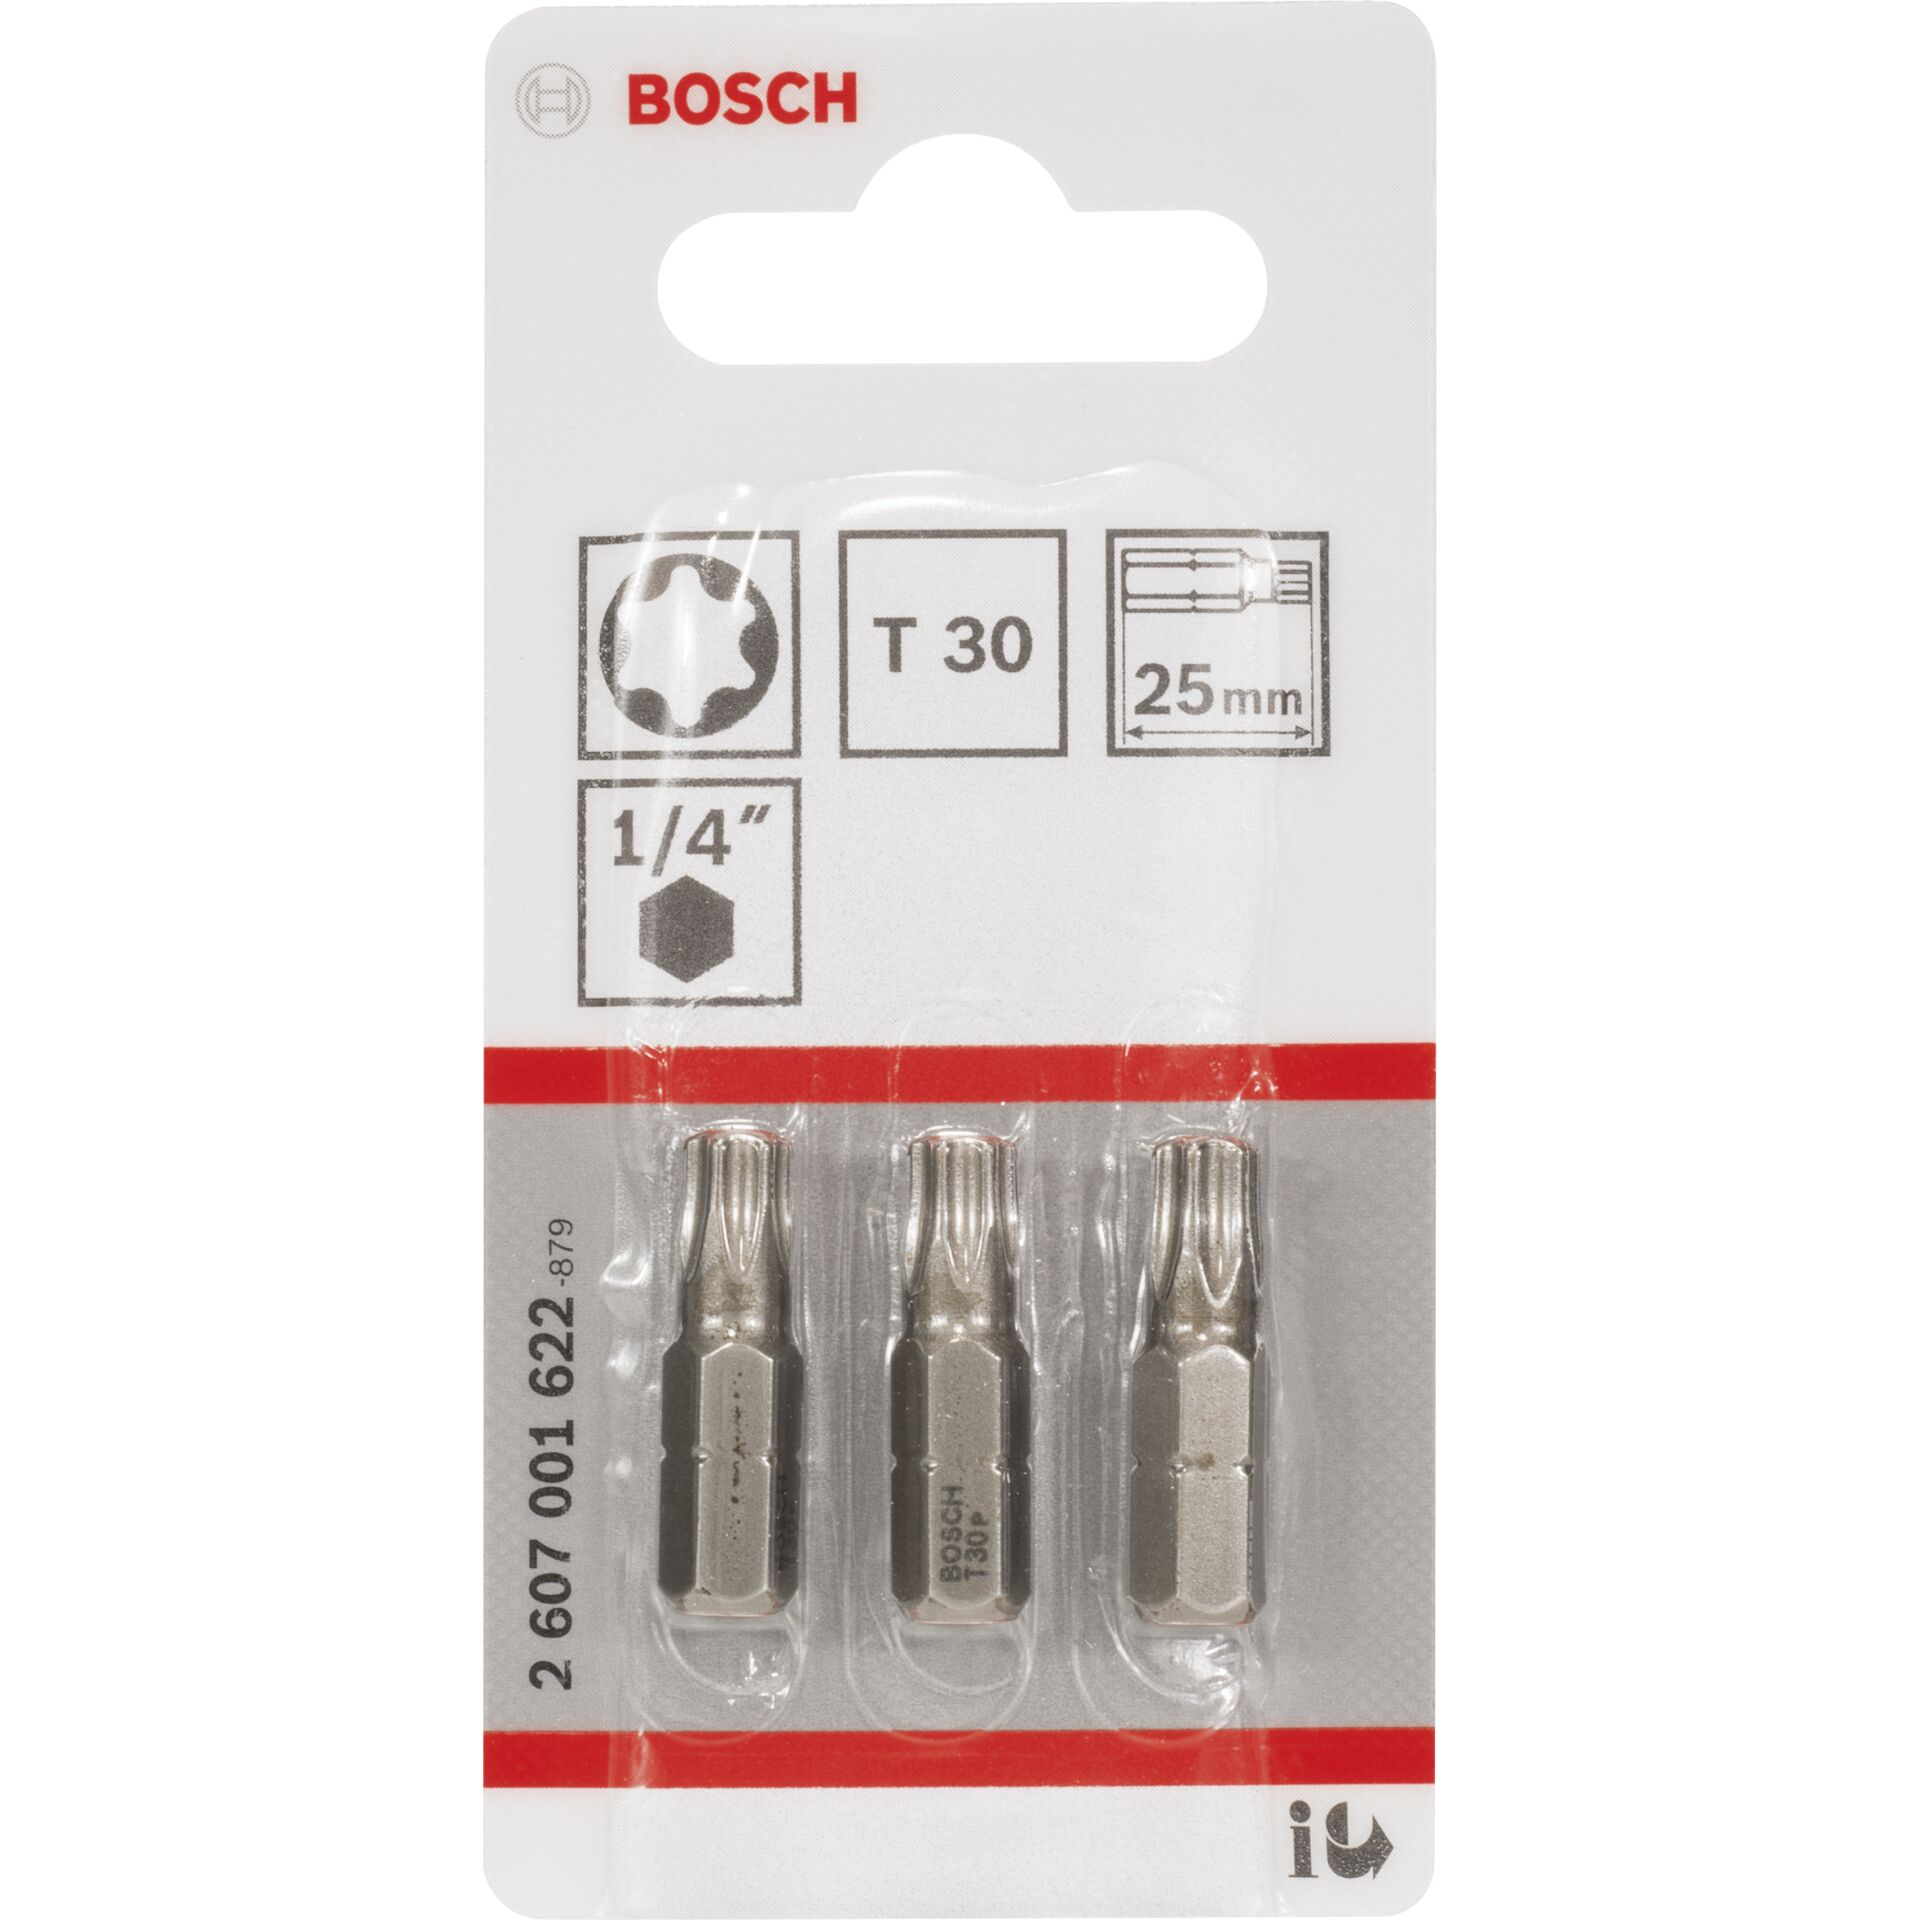 Bosch Schrauberbit extra-hart